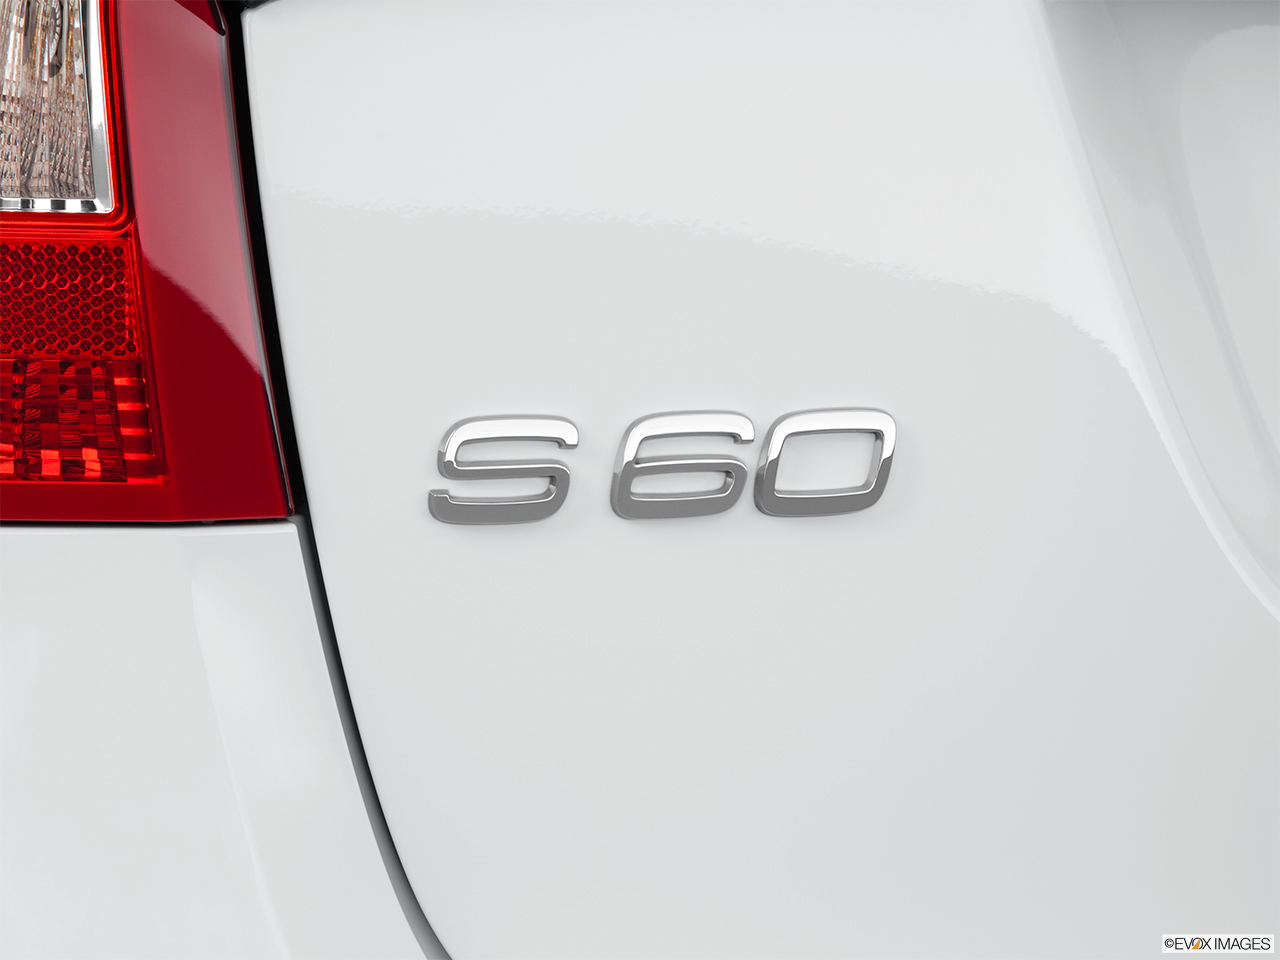 2011 Volvo S60 T6 A Rear model badge/emblem 